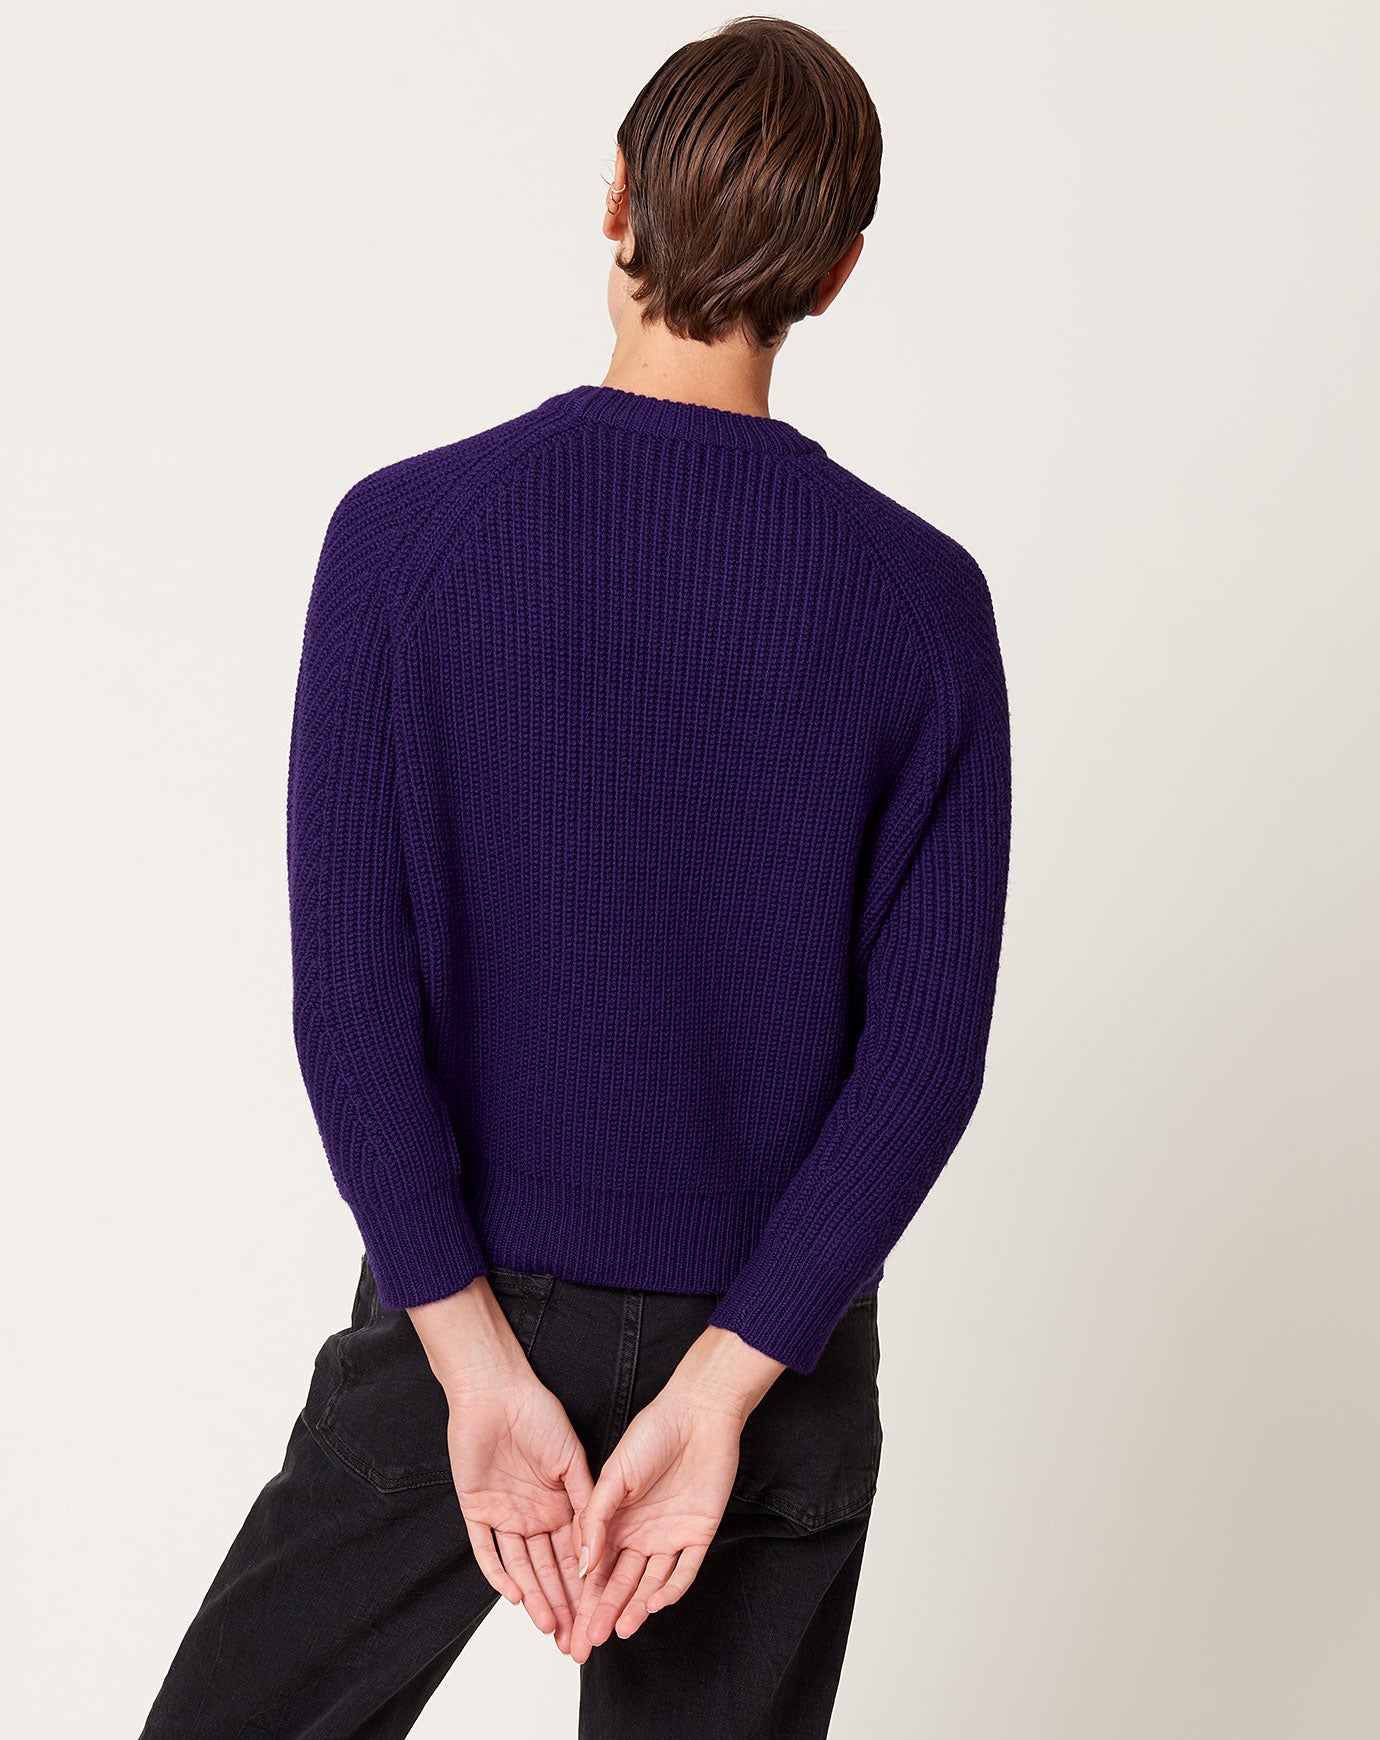 Demylee Chelsea Sweater in Purple Night